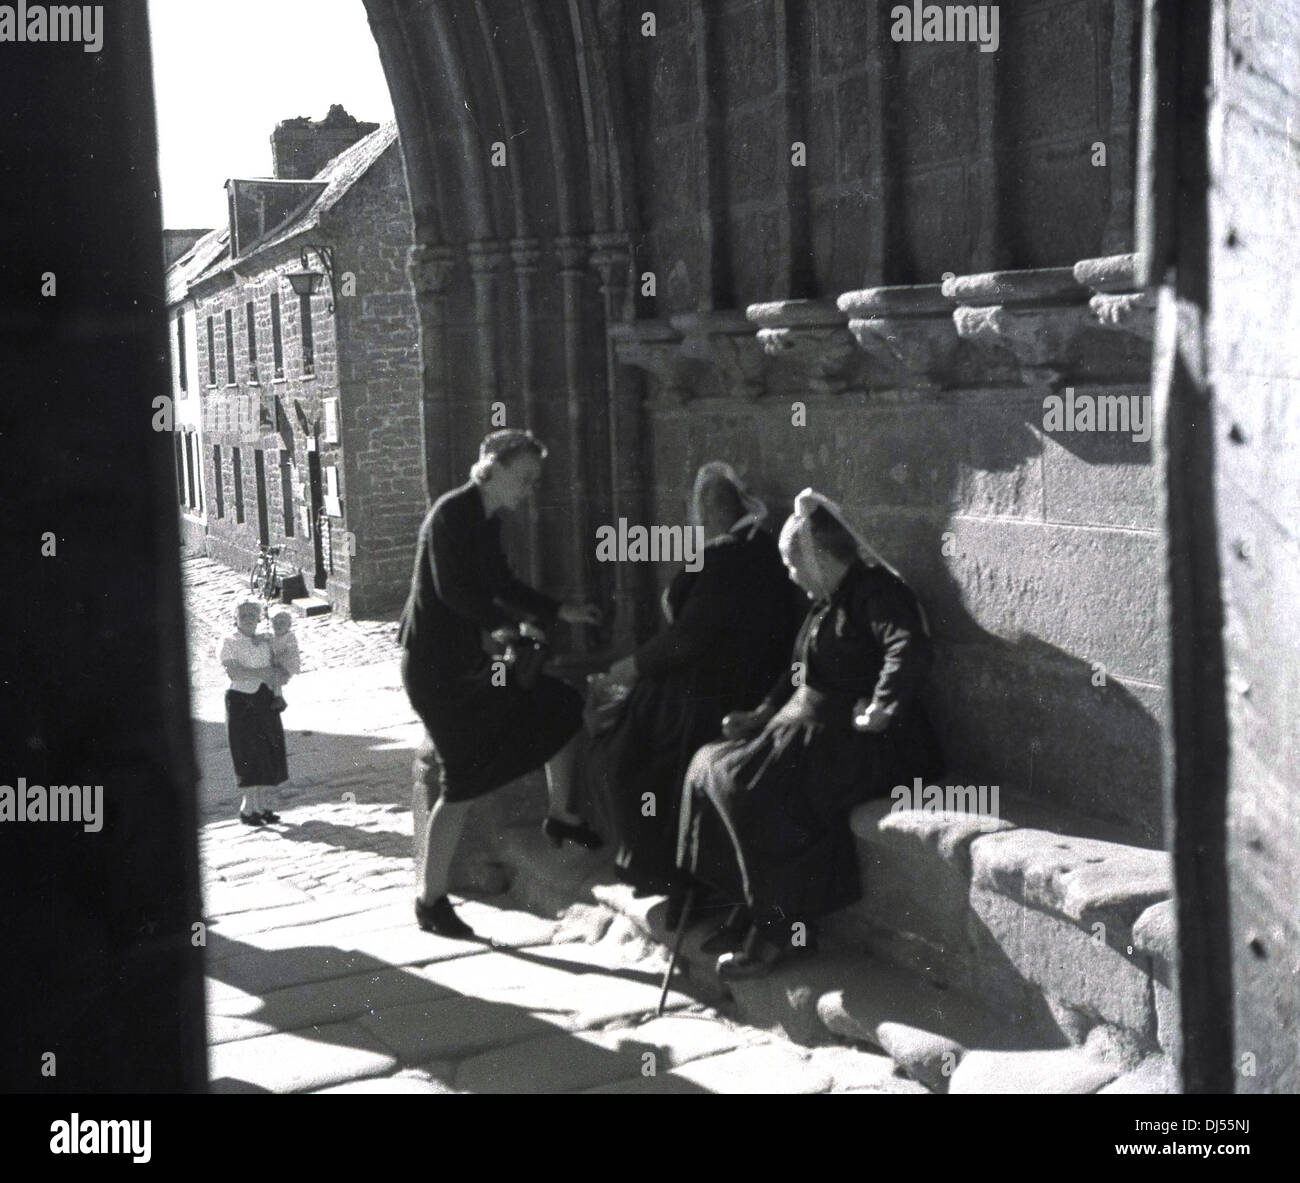 Historisches Bild von 1930s. Zwei belgische Nonnen sitzen auf einem Steinsitz am gewölbten Eingang einer Kirche in Lüttich, Belgien, und sprechen mit einer Dame. Stockfoto